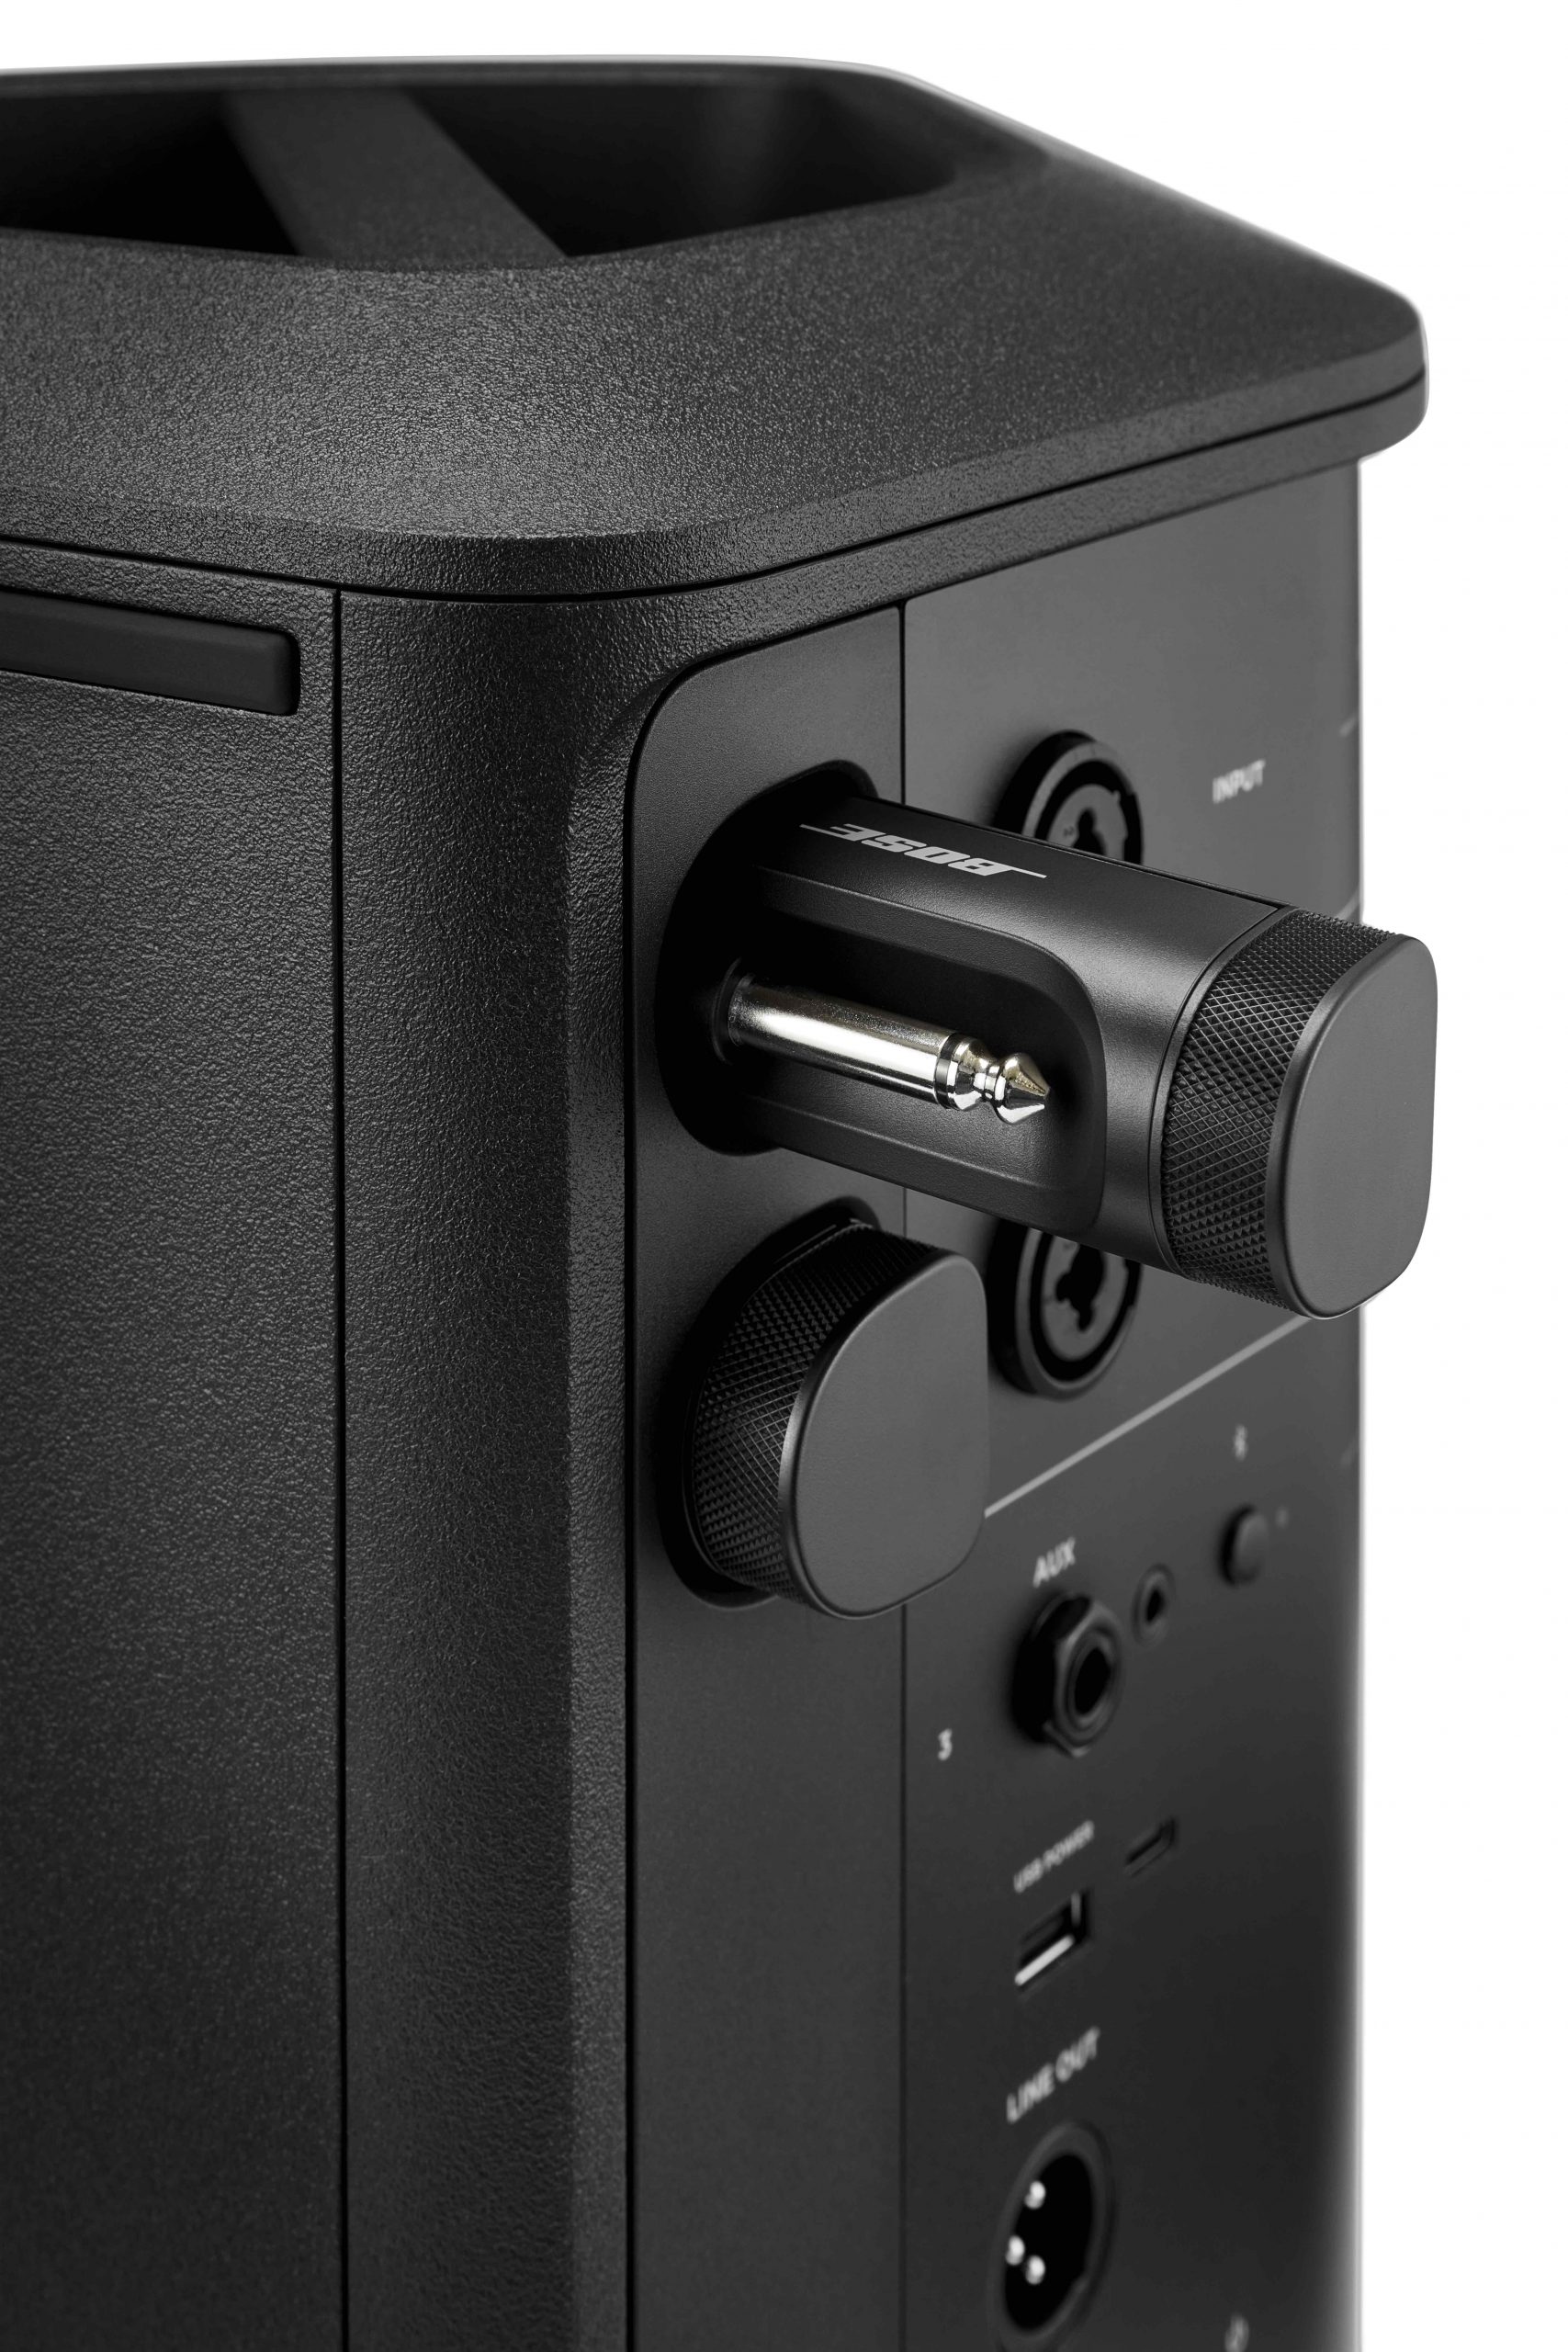 Bose Professional lanza el revolucionario S1 Pro+ - sonido e iluminación